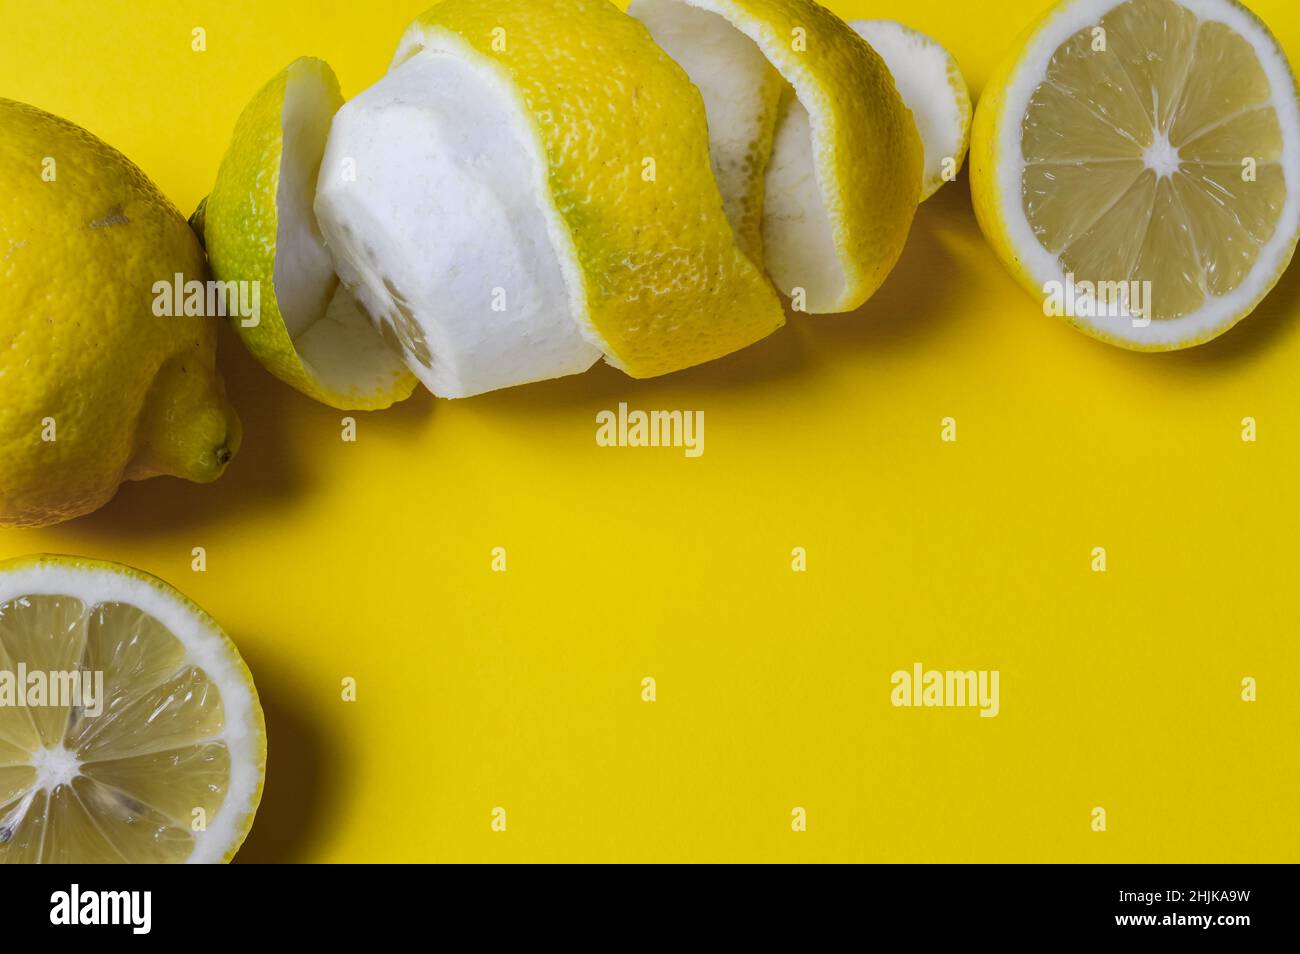 Fröhlicher Hintergrund von halbierten Zitronen und ganzen Zitronen und spiralförmiger Zitronenschale auf einem gelben Papierhintergrund mit viel Platz für etwas Text Stockfoto